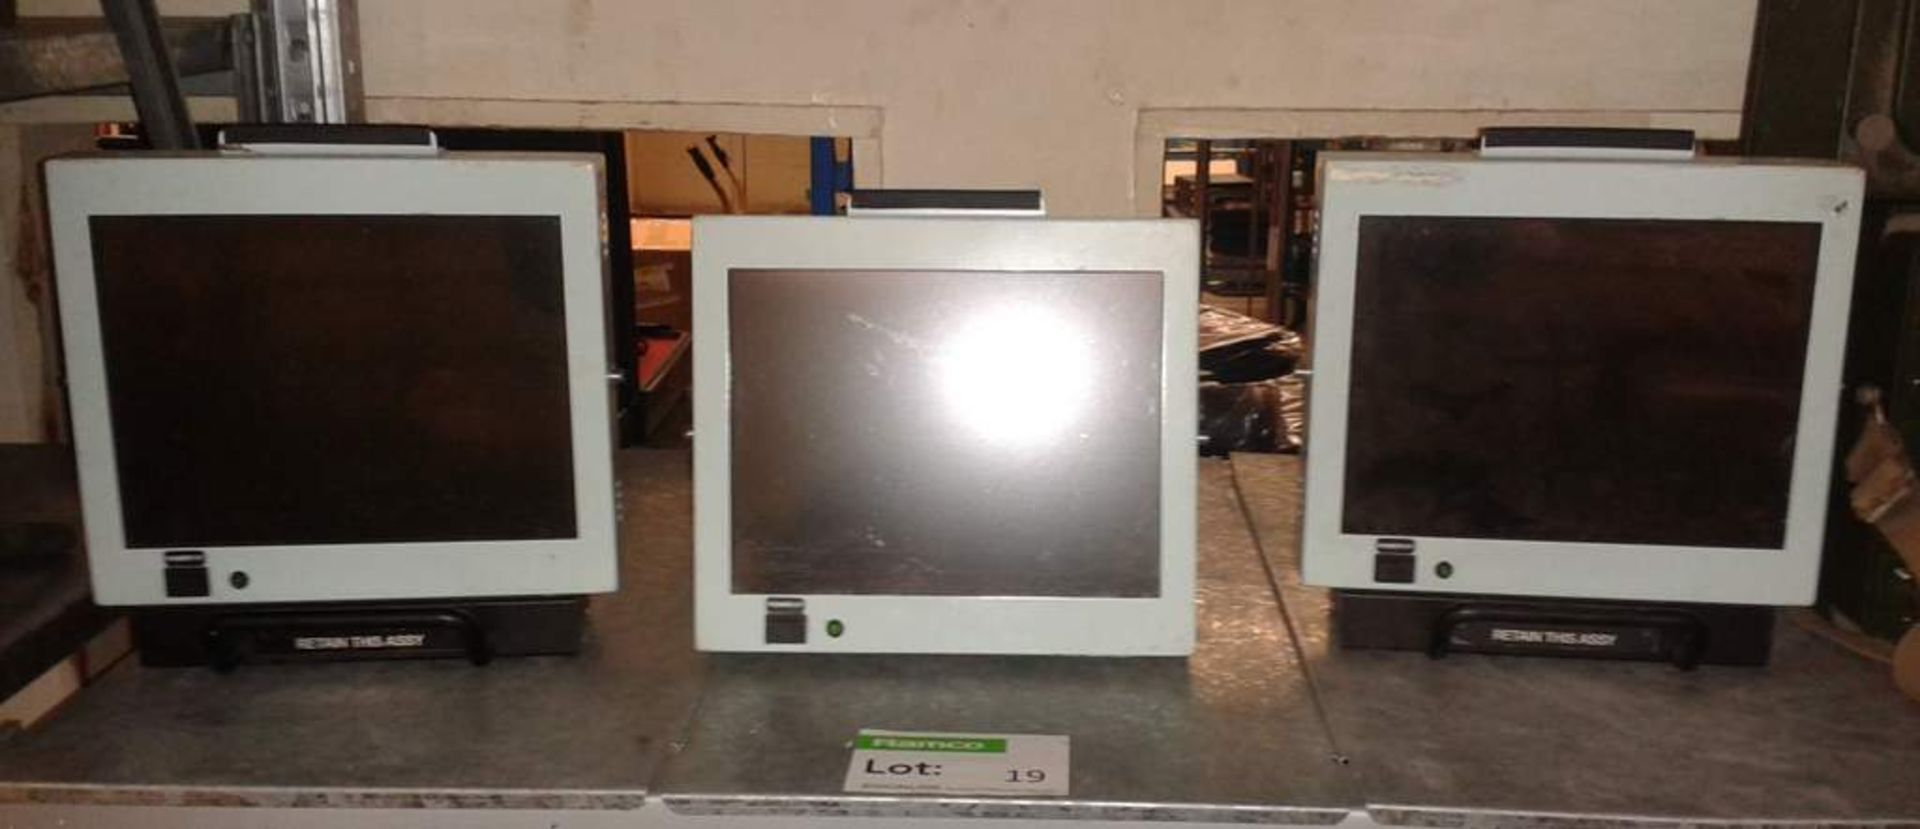 3x VDU (LCD Monitor) - Model:104SLCD1NE0PX - NSN:5980-99-151-8257